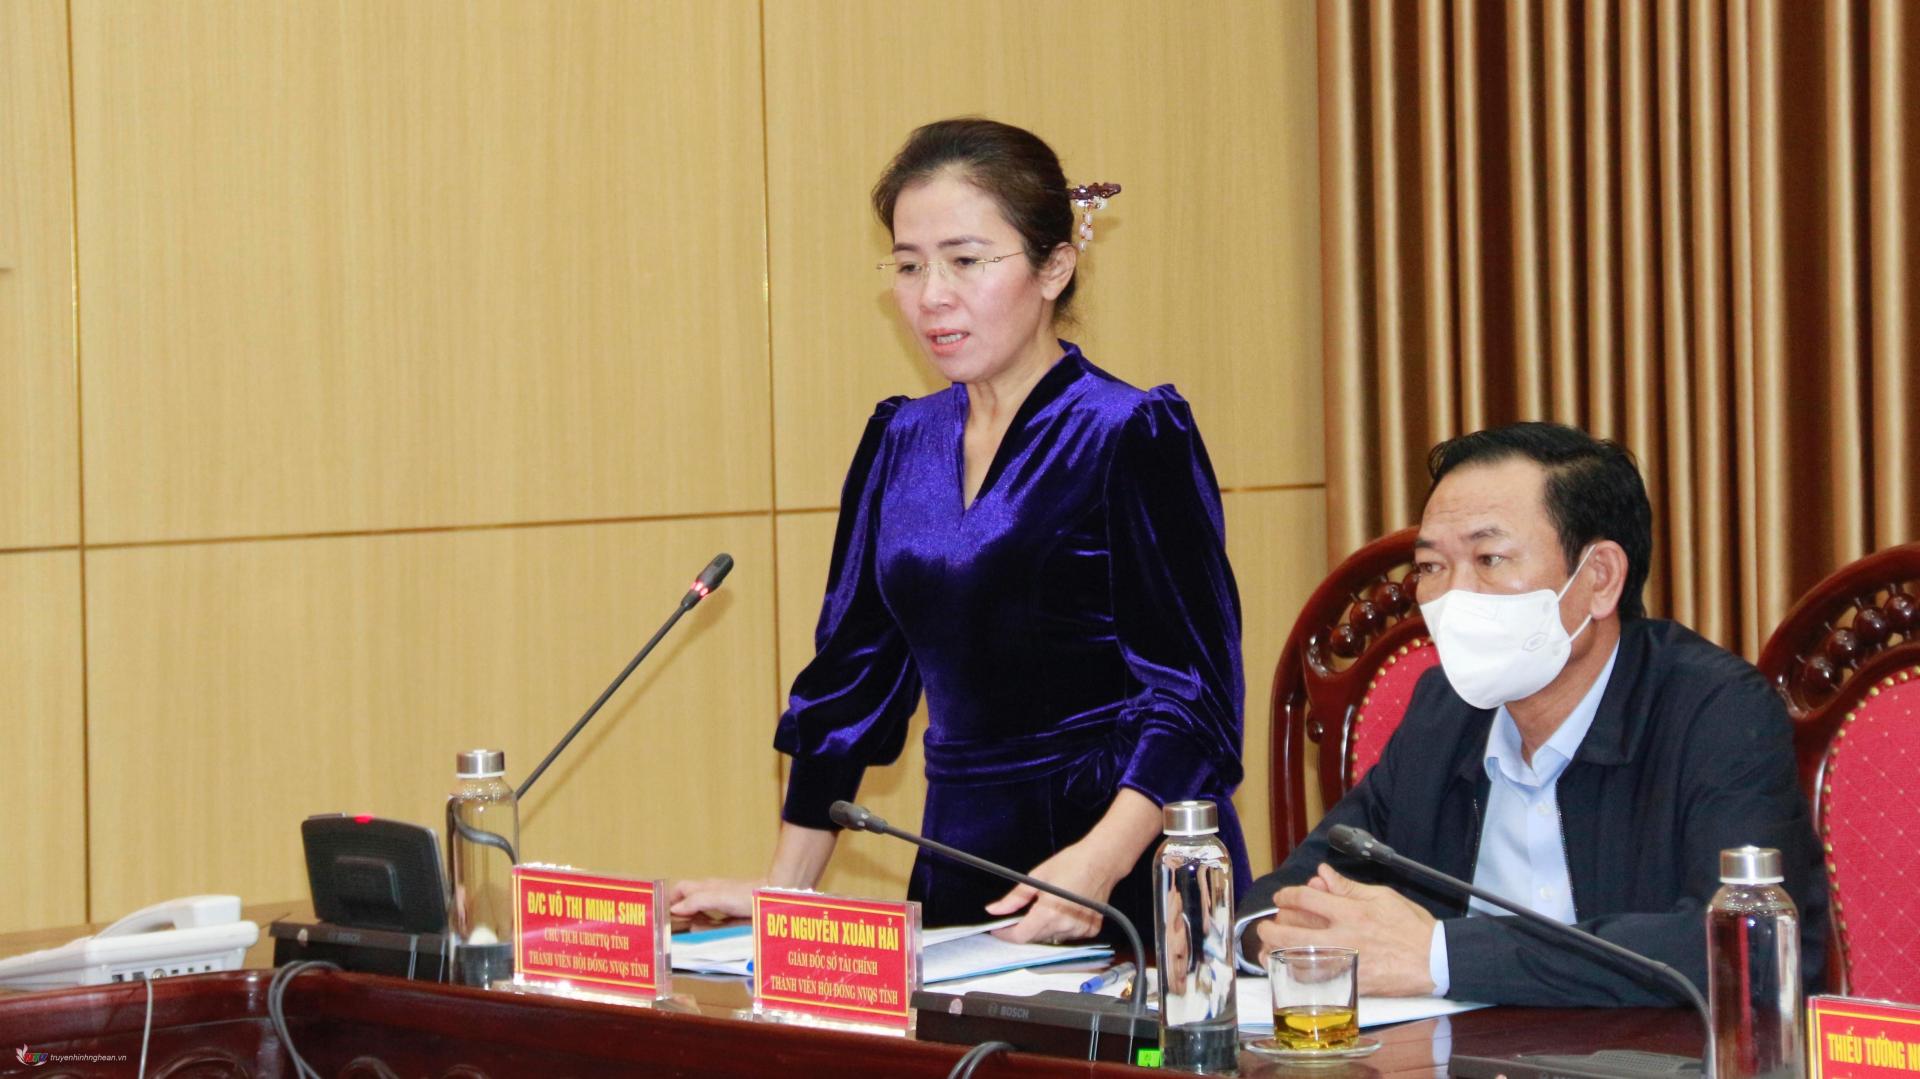 Chủ tịch UBMTTQ tỉnh Võ Thị Minh Sinh phát biểu tại hội nghị.